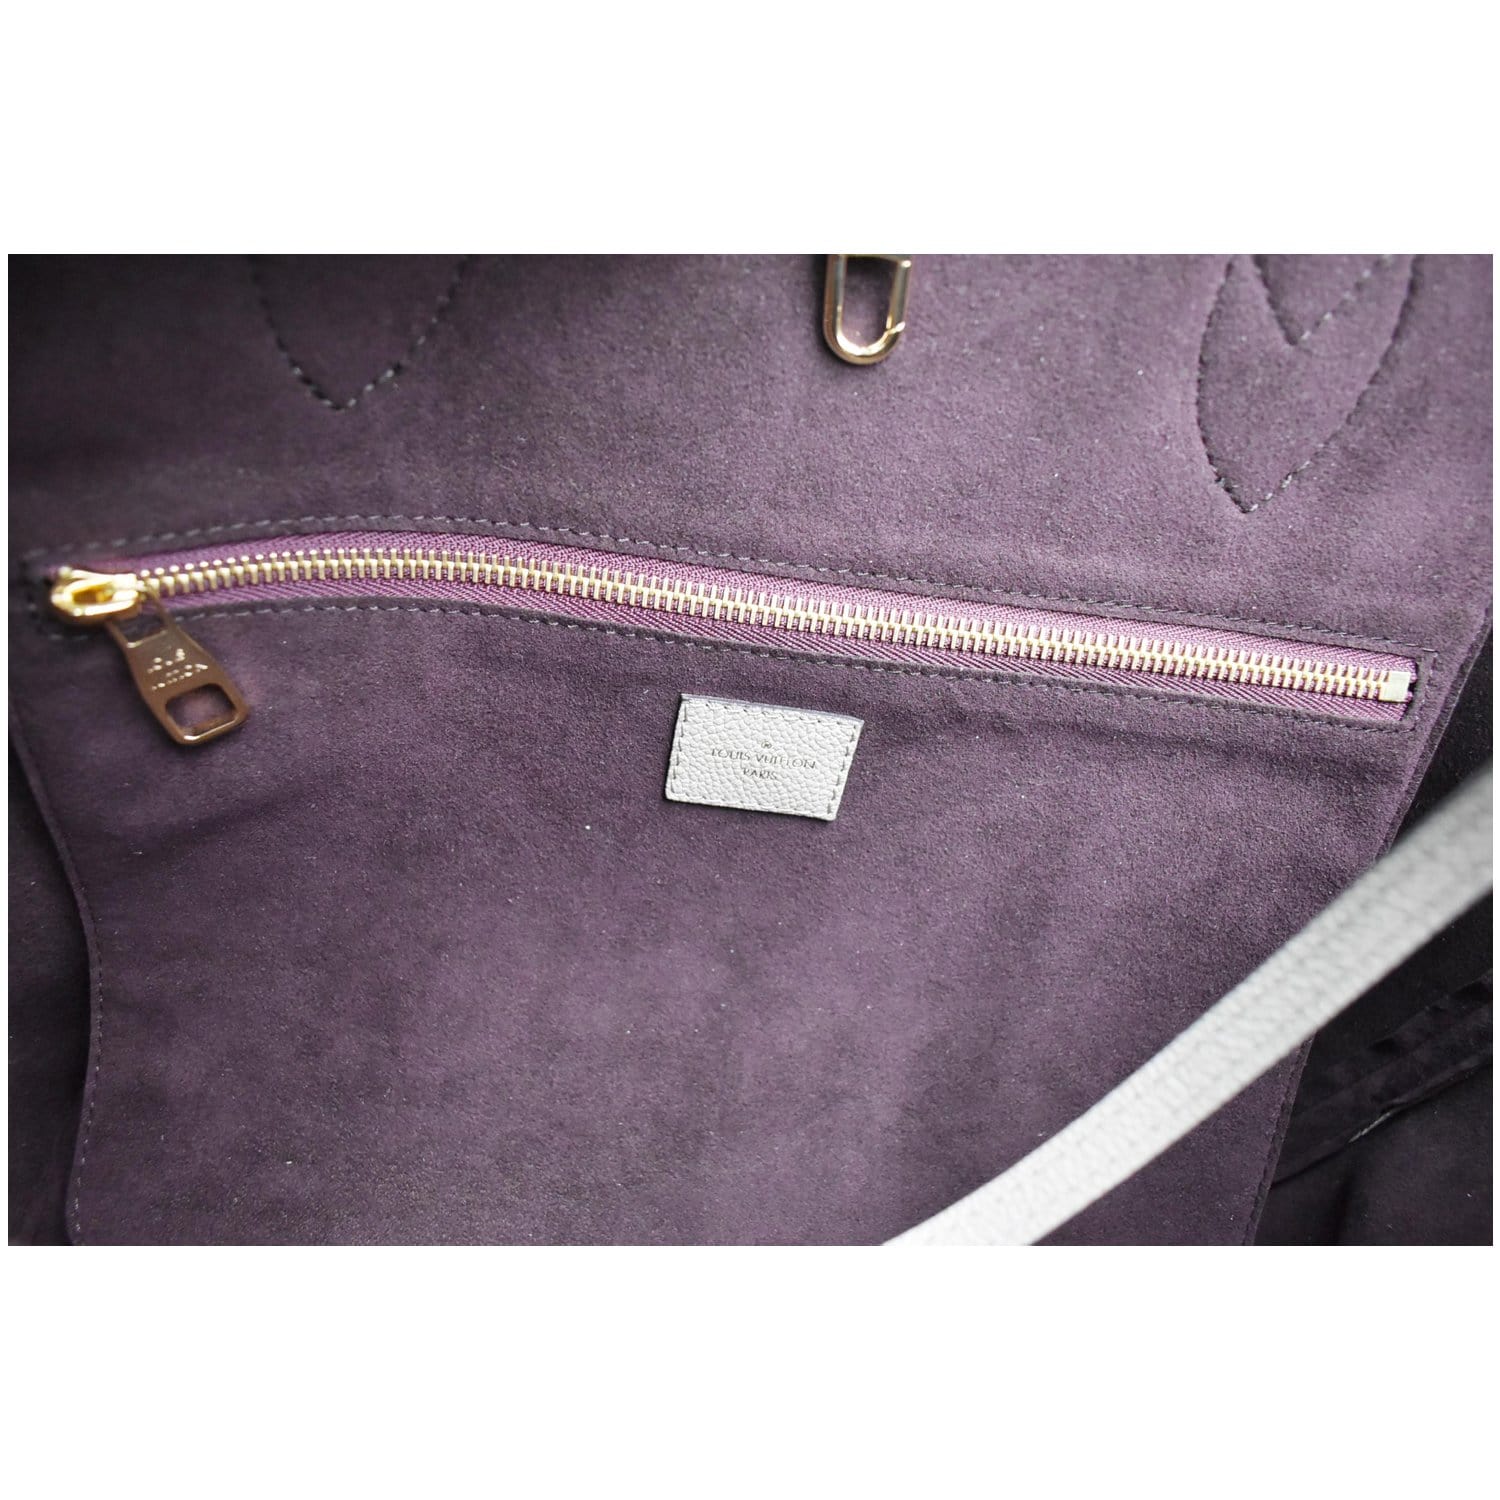 Authentic Louis Vuitton Monogram Neverfull MM w/ Beige Interior Tote Bag  M40995